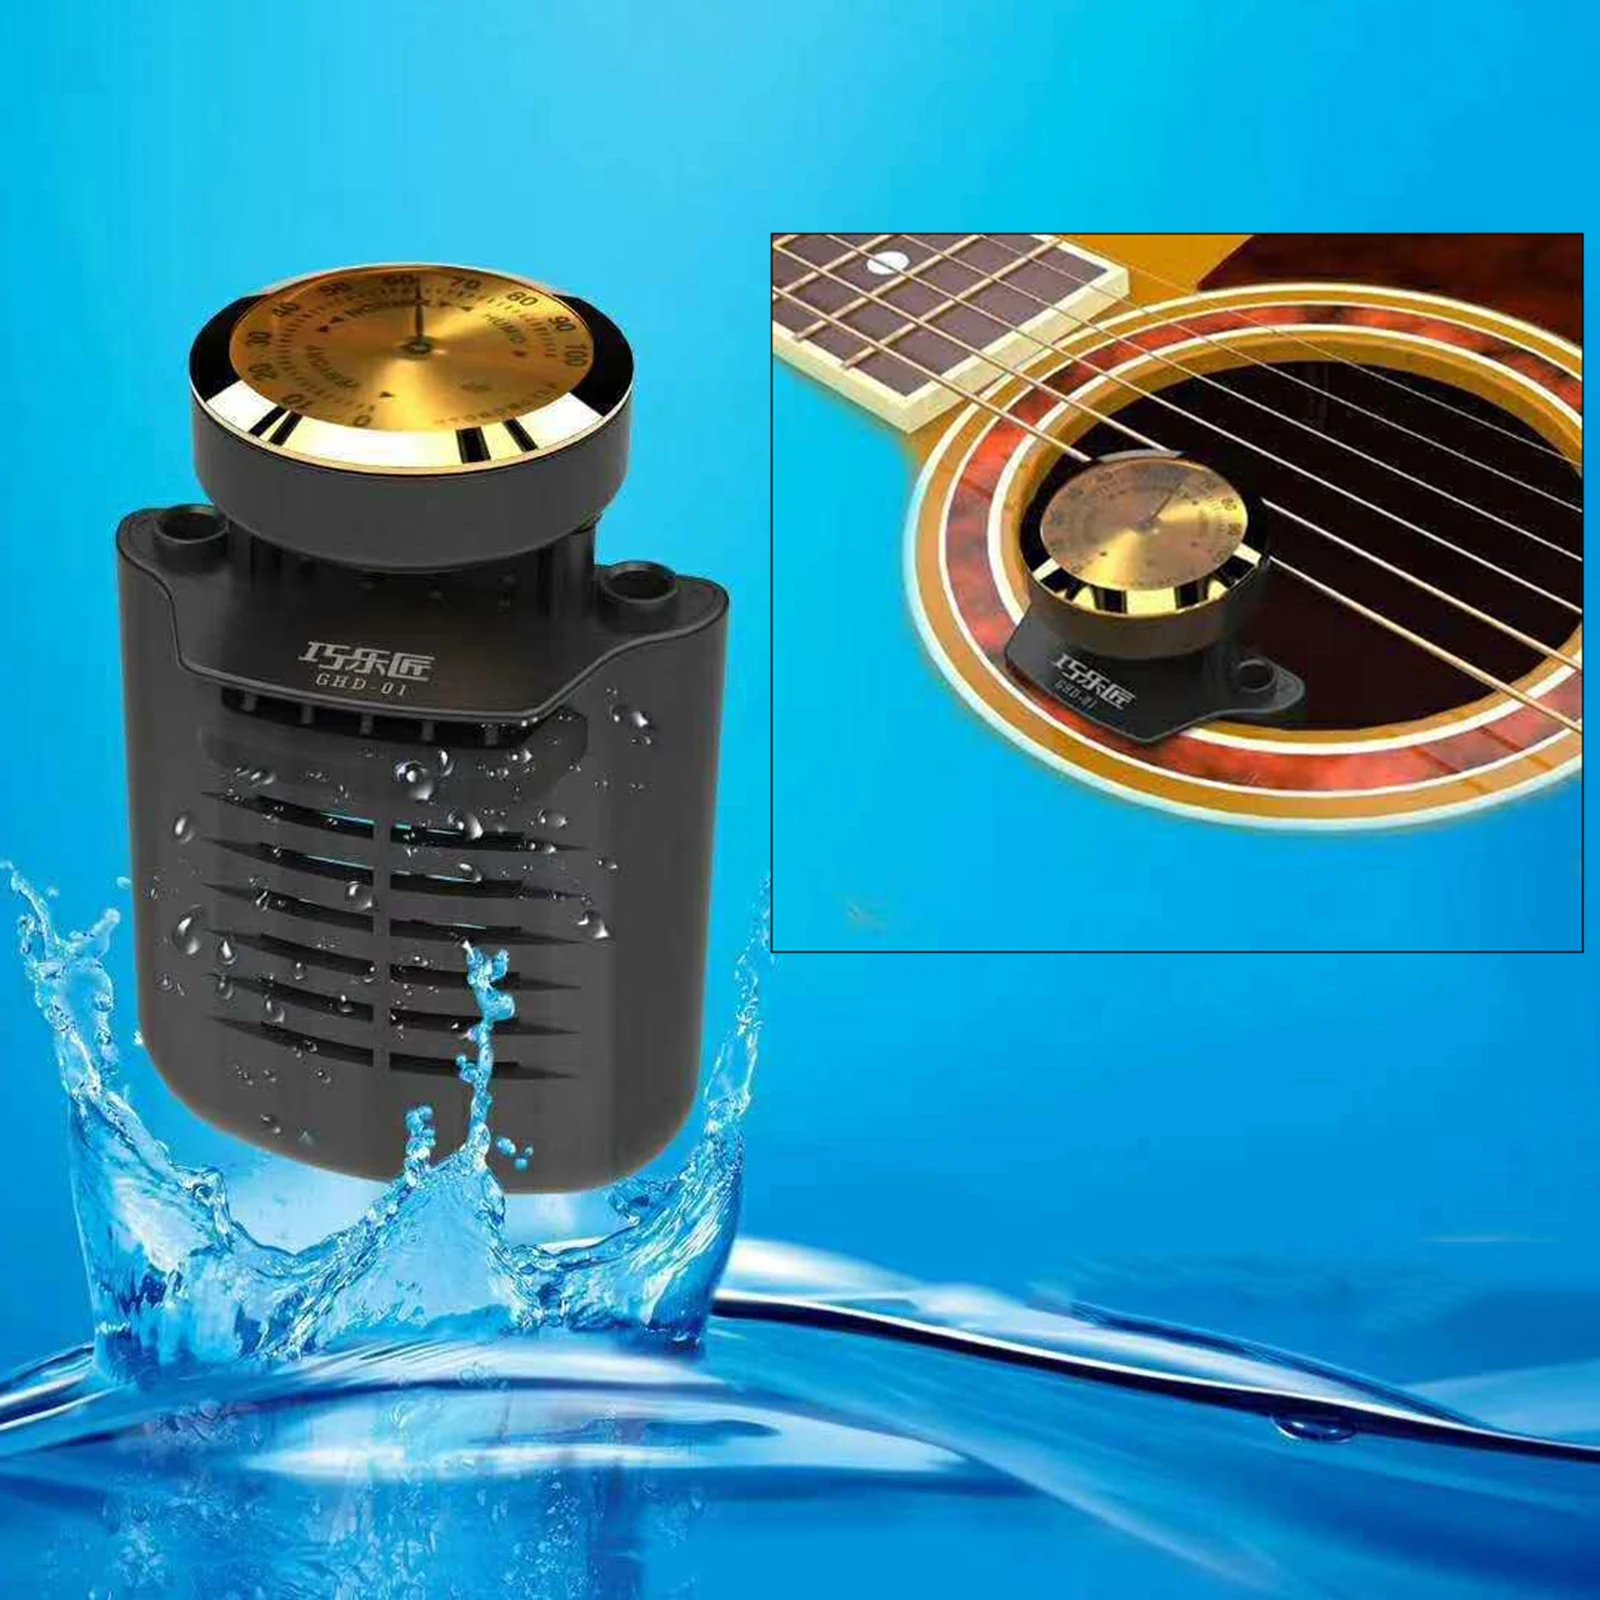 

Гитарный увлажнитель профессиональная система ухода за влажностью гитары, гигрометр для предотвращения растрескивания